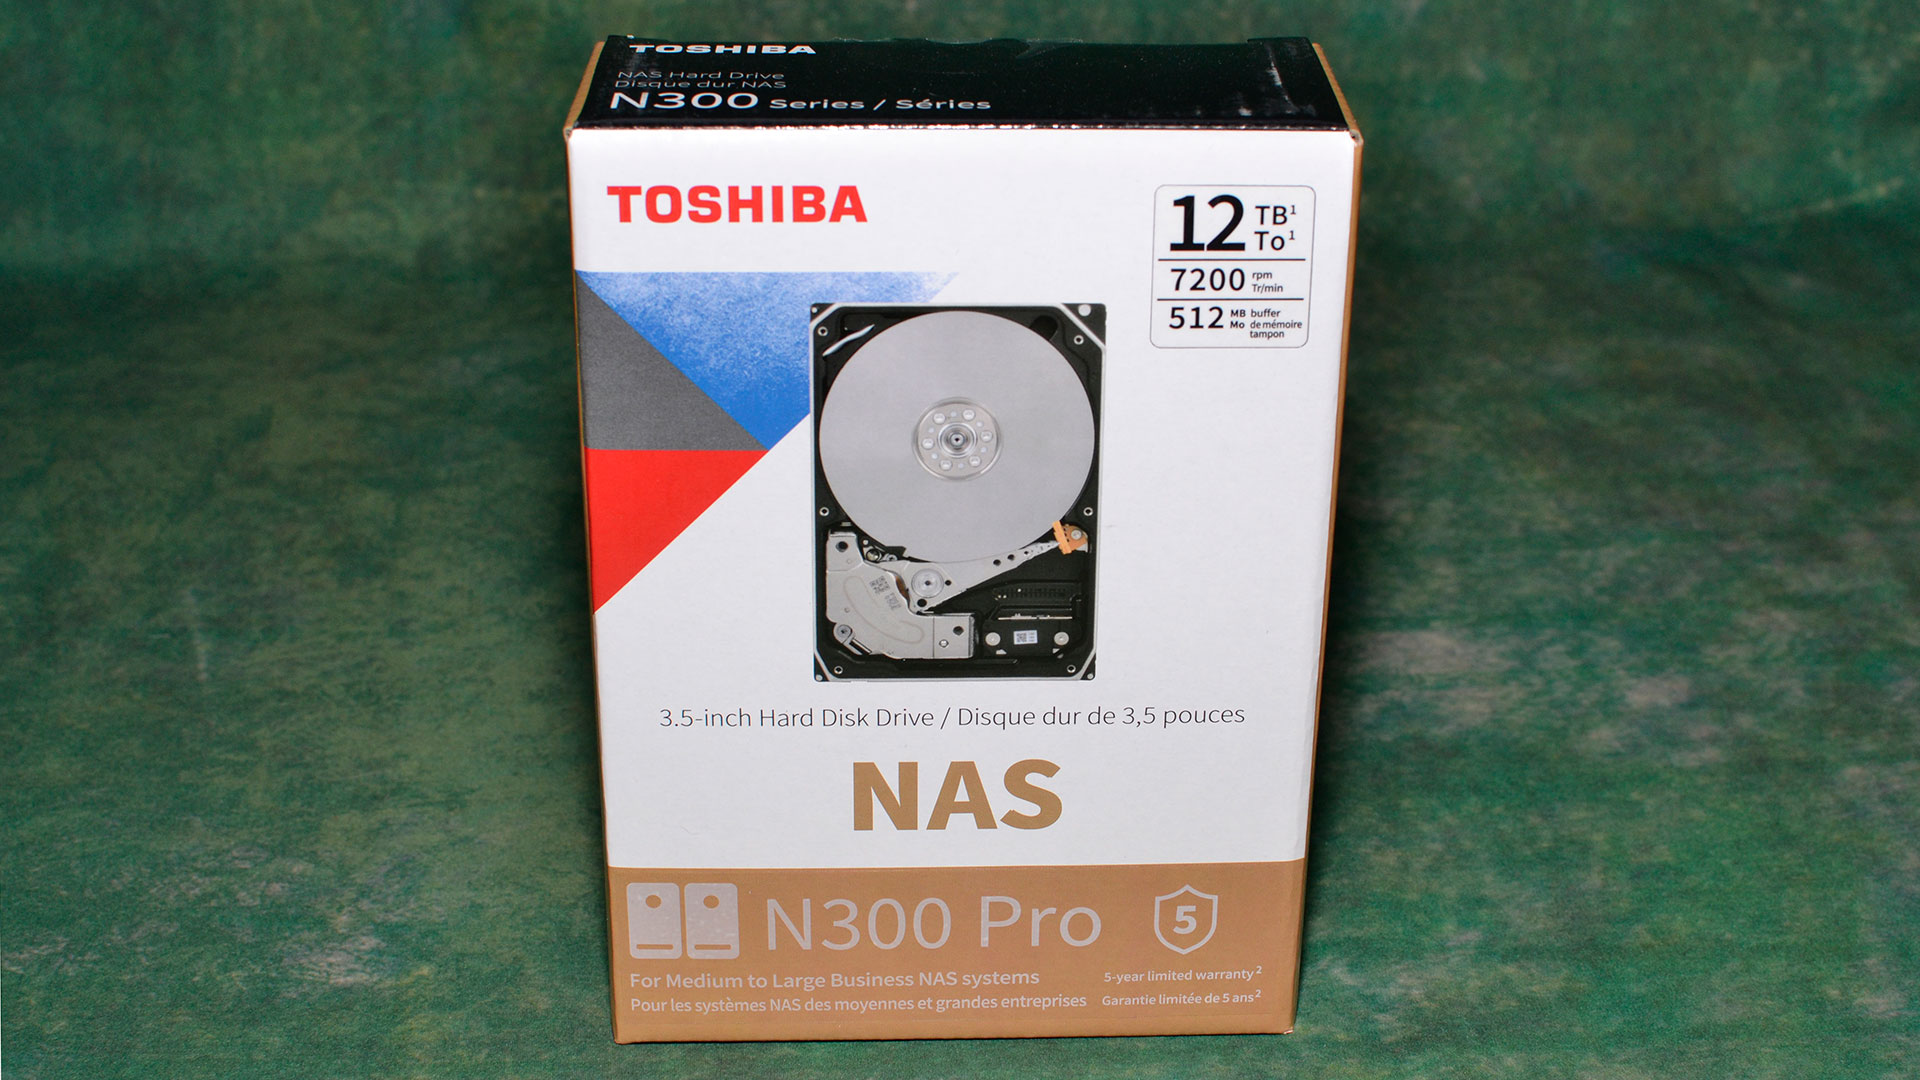 Toshiba N300 Pro 12TB/20TB HDD